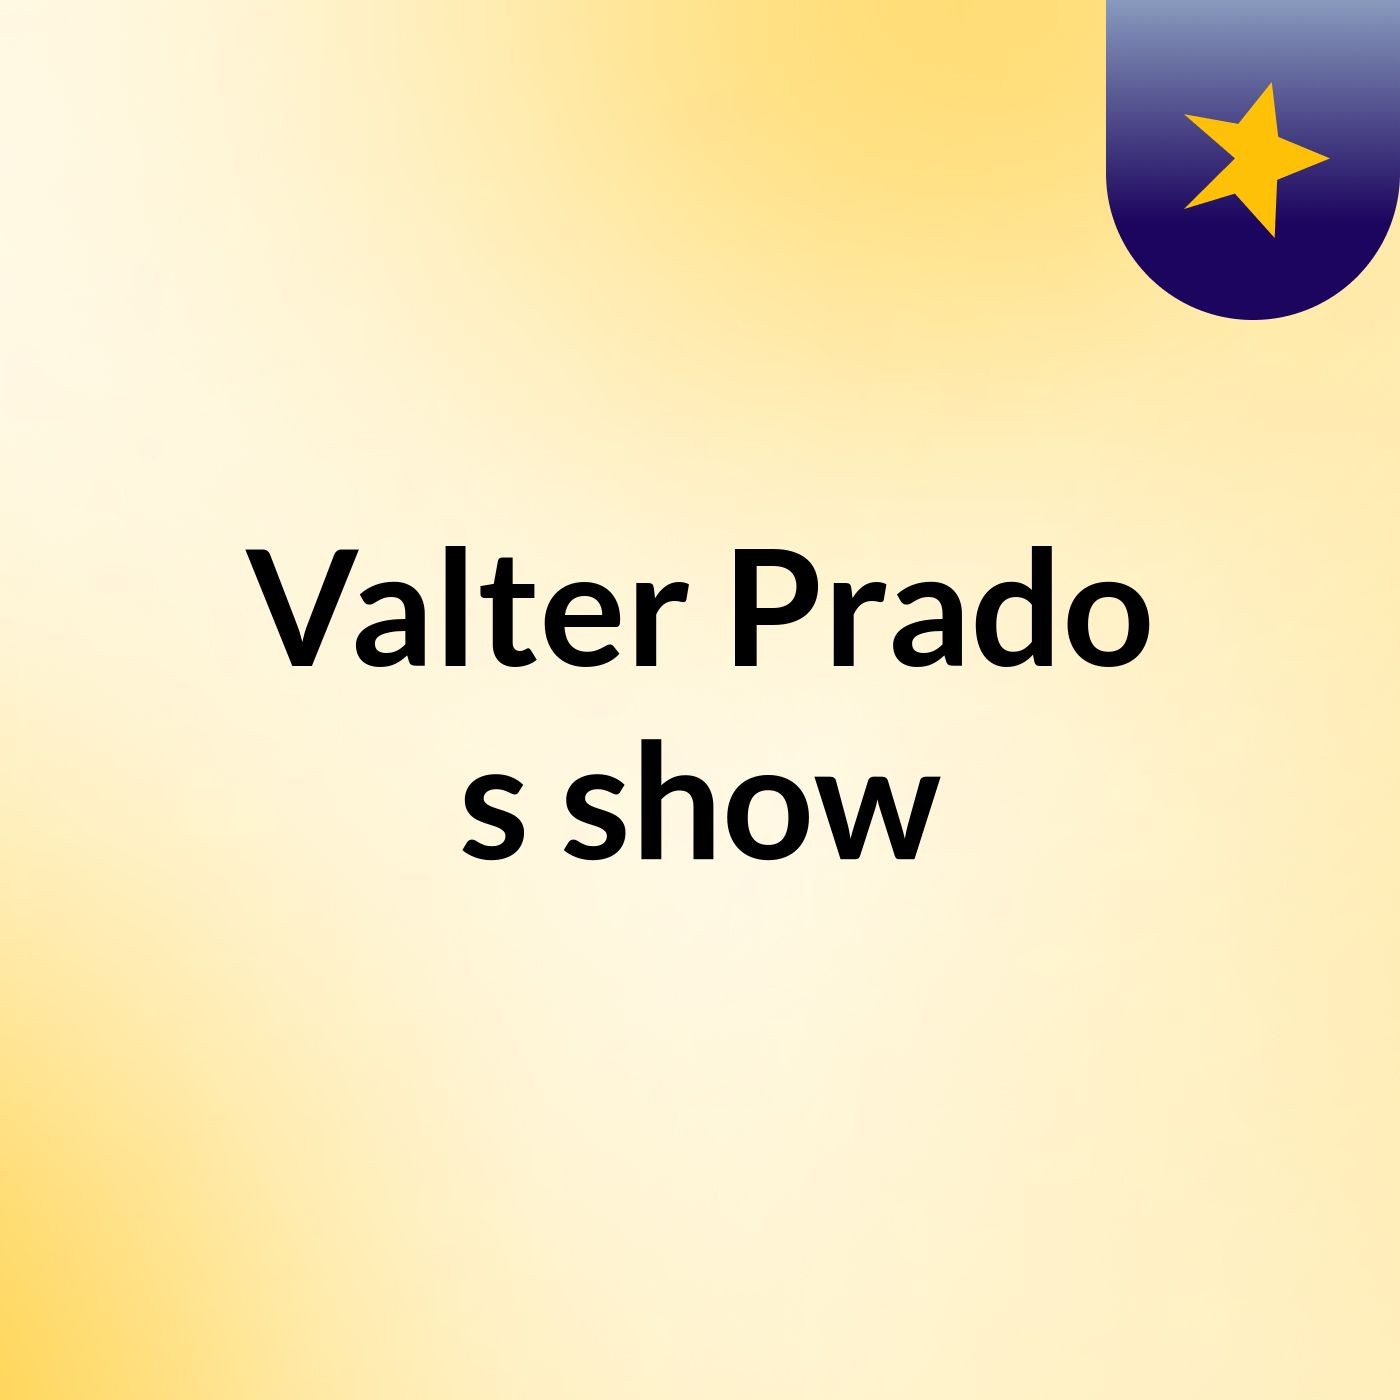 Valter Prado's show